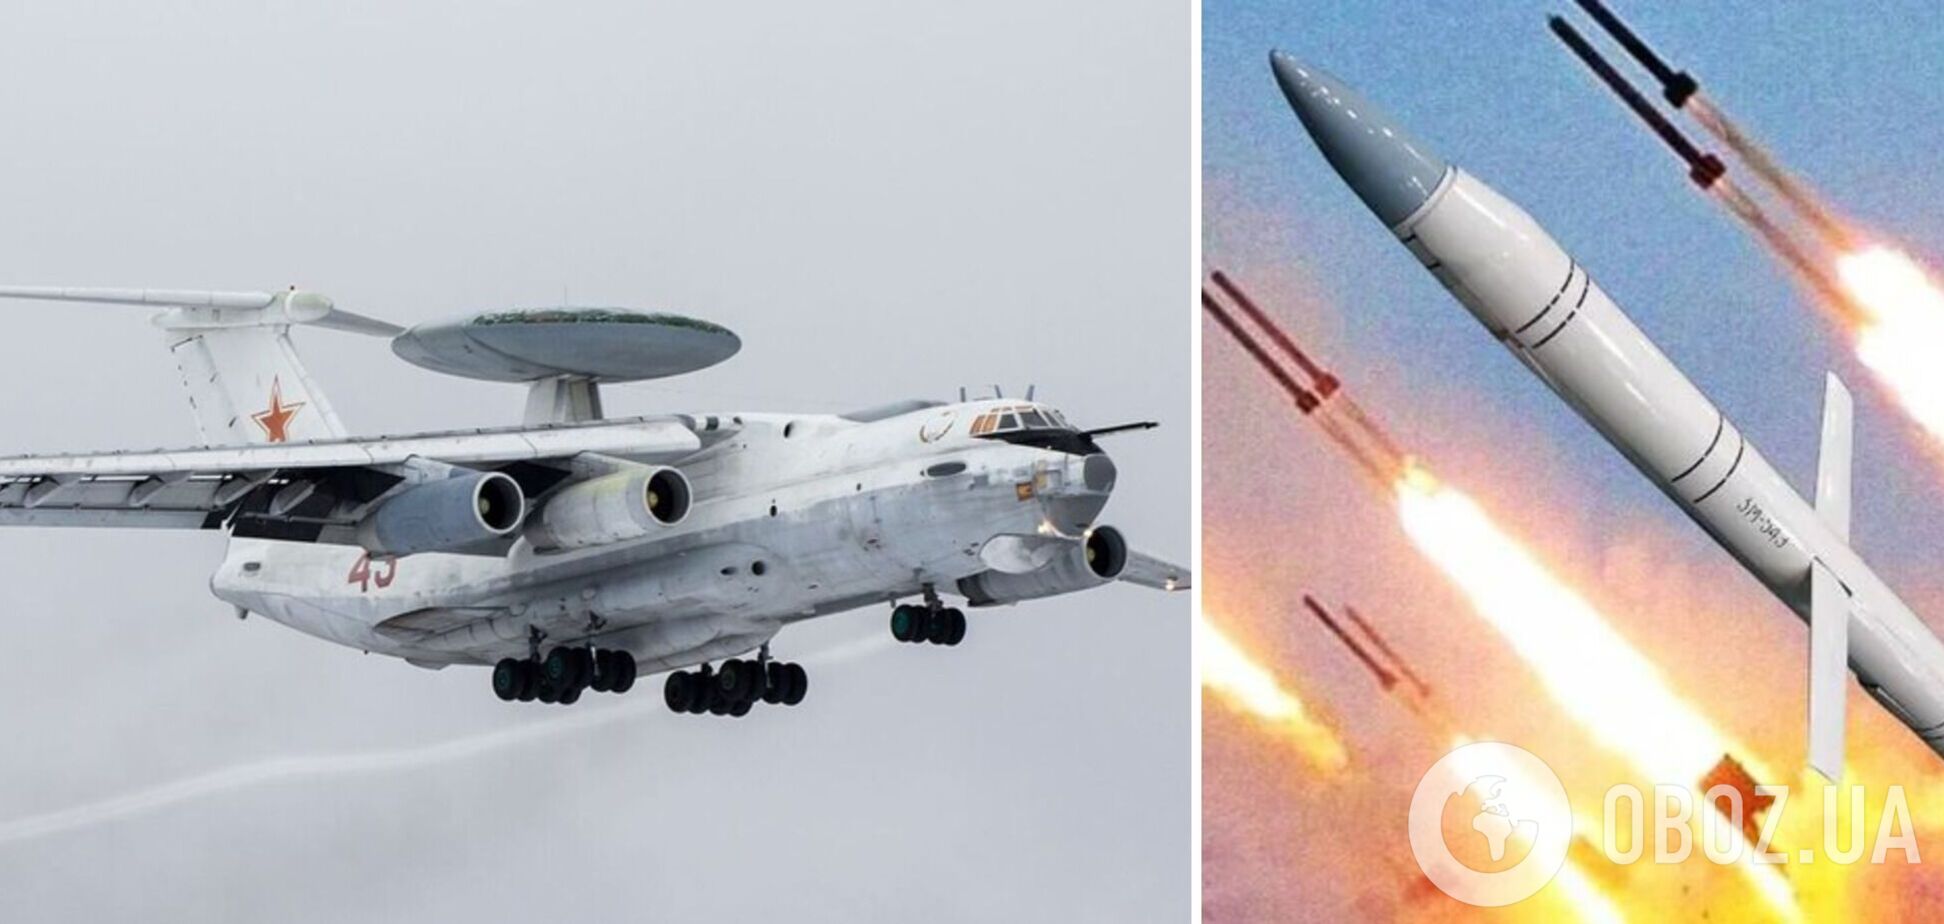 Ігнат пояснив, чи зменшить знищення російського А-50 кількість ракетних обстрілів